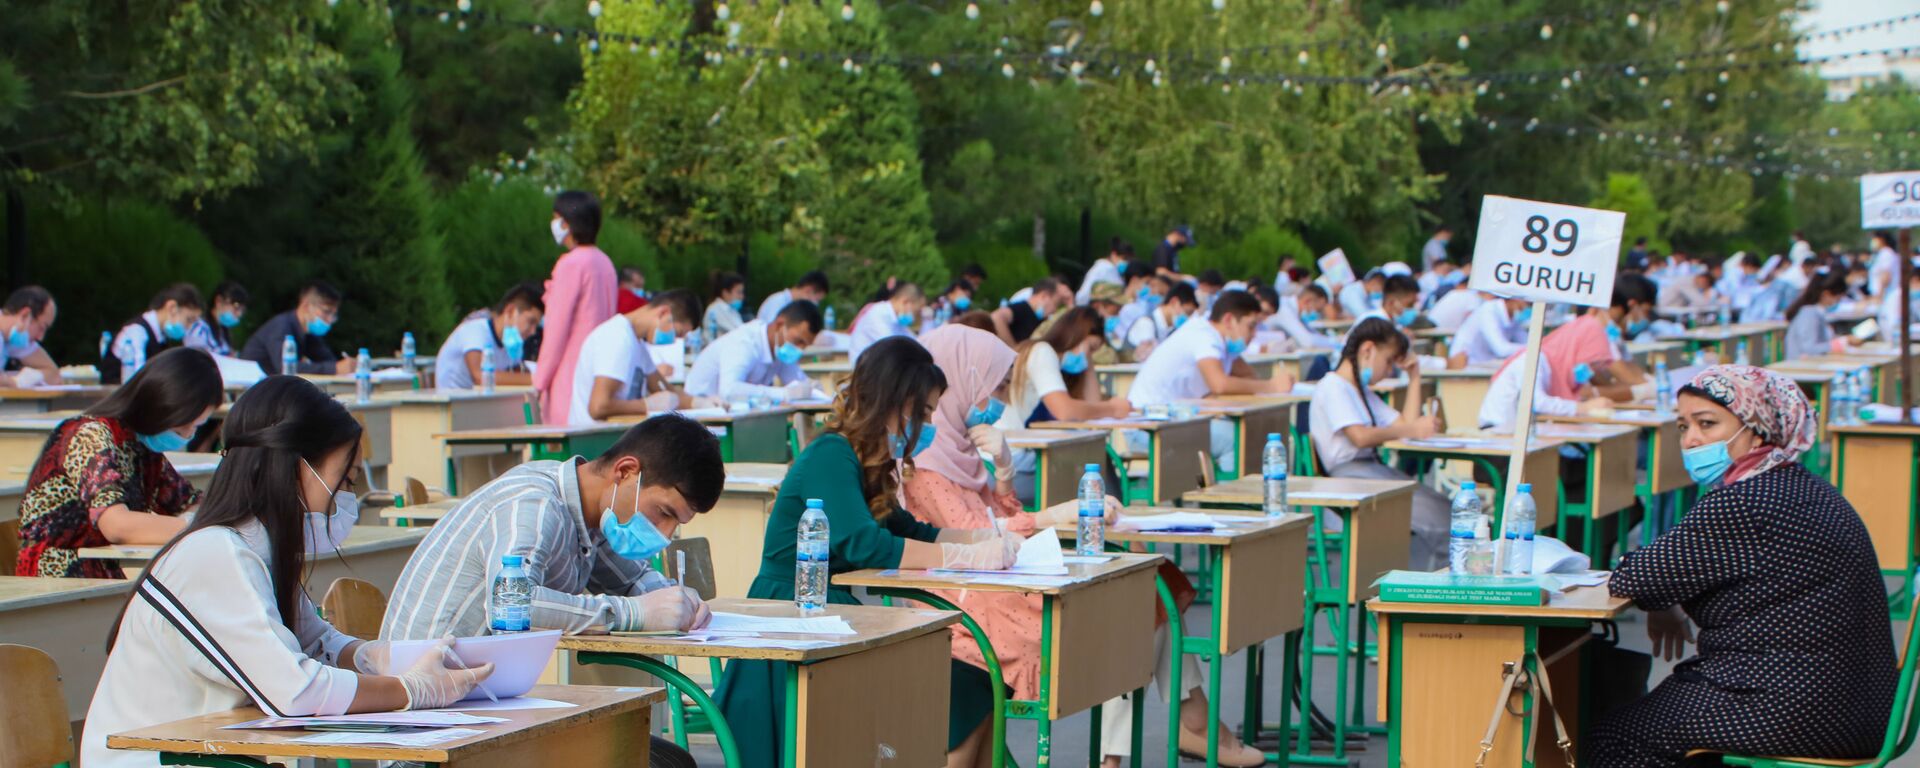 Узбекские студенты сдают вступительные экзамены под открытым небом в Ташкенте - Sputnik Ўзбекистон, 1920, 18.07.2021